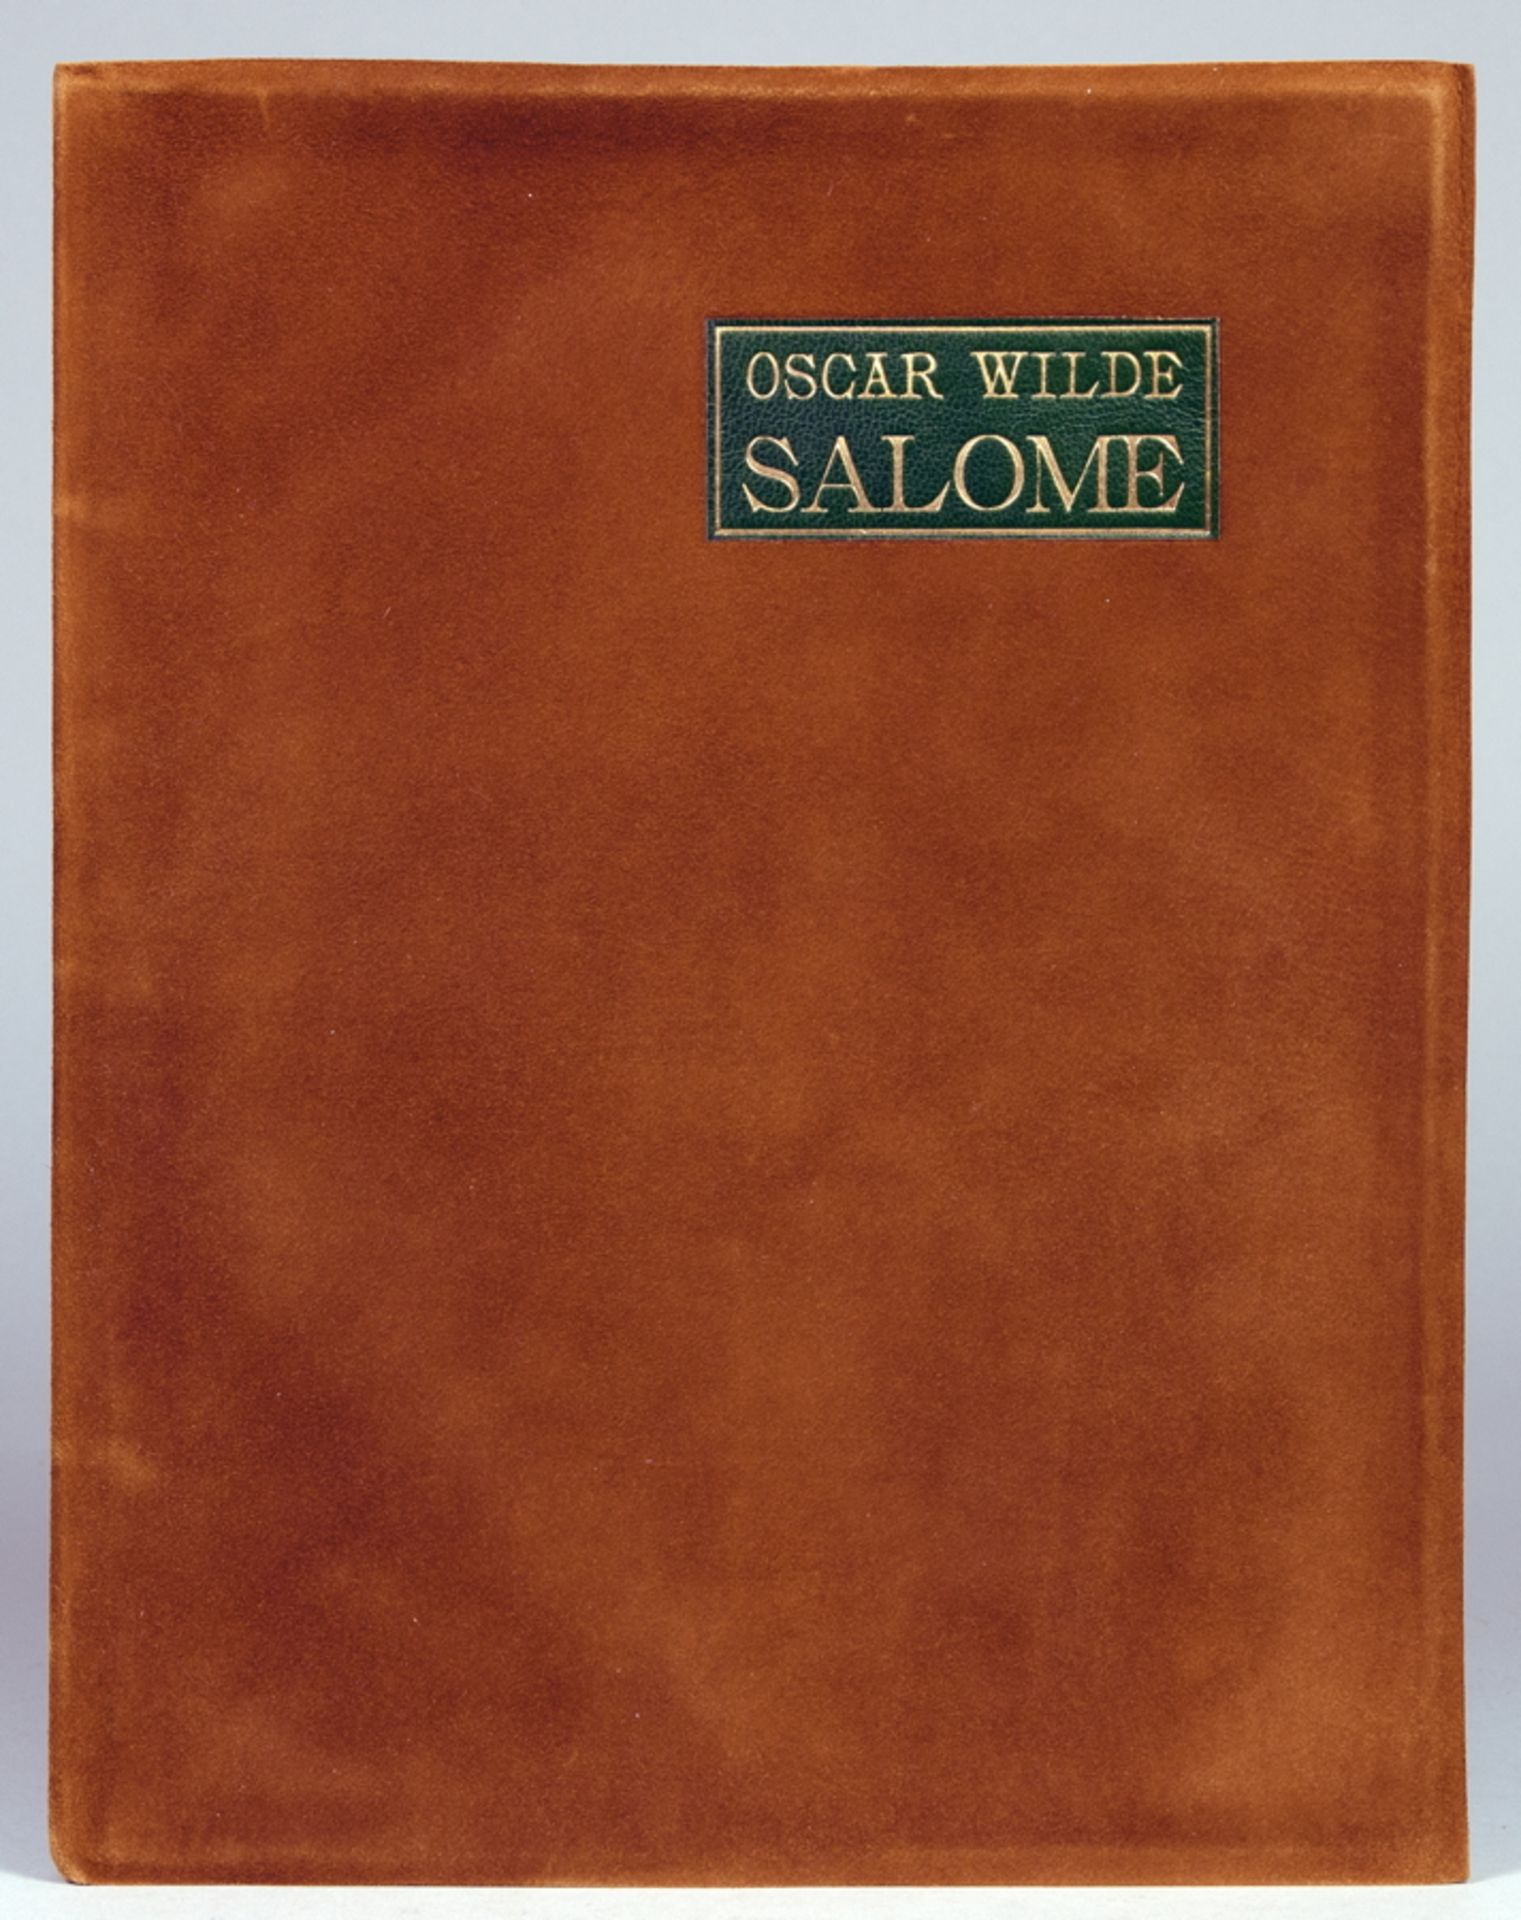 Insel Verlag - Oscar Wilde. Salome. Tragödie in einem Akte. Ins Deutsche übertragen von Hedwig - Image 2 of 2